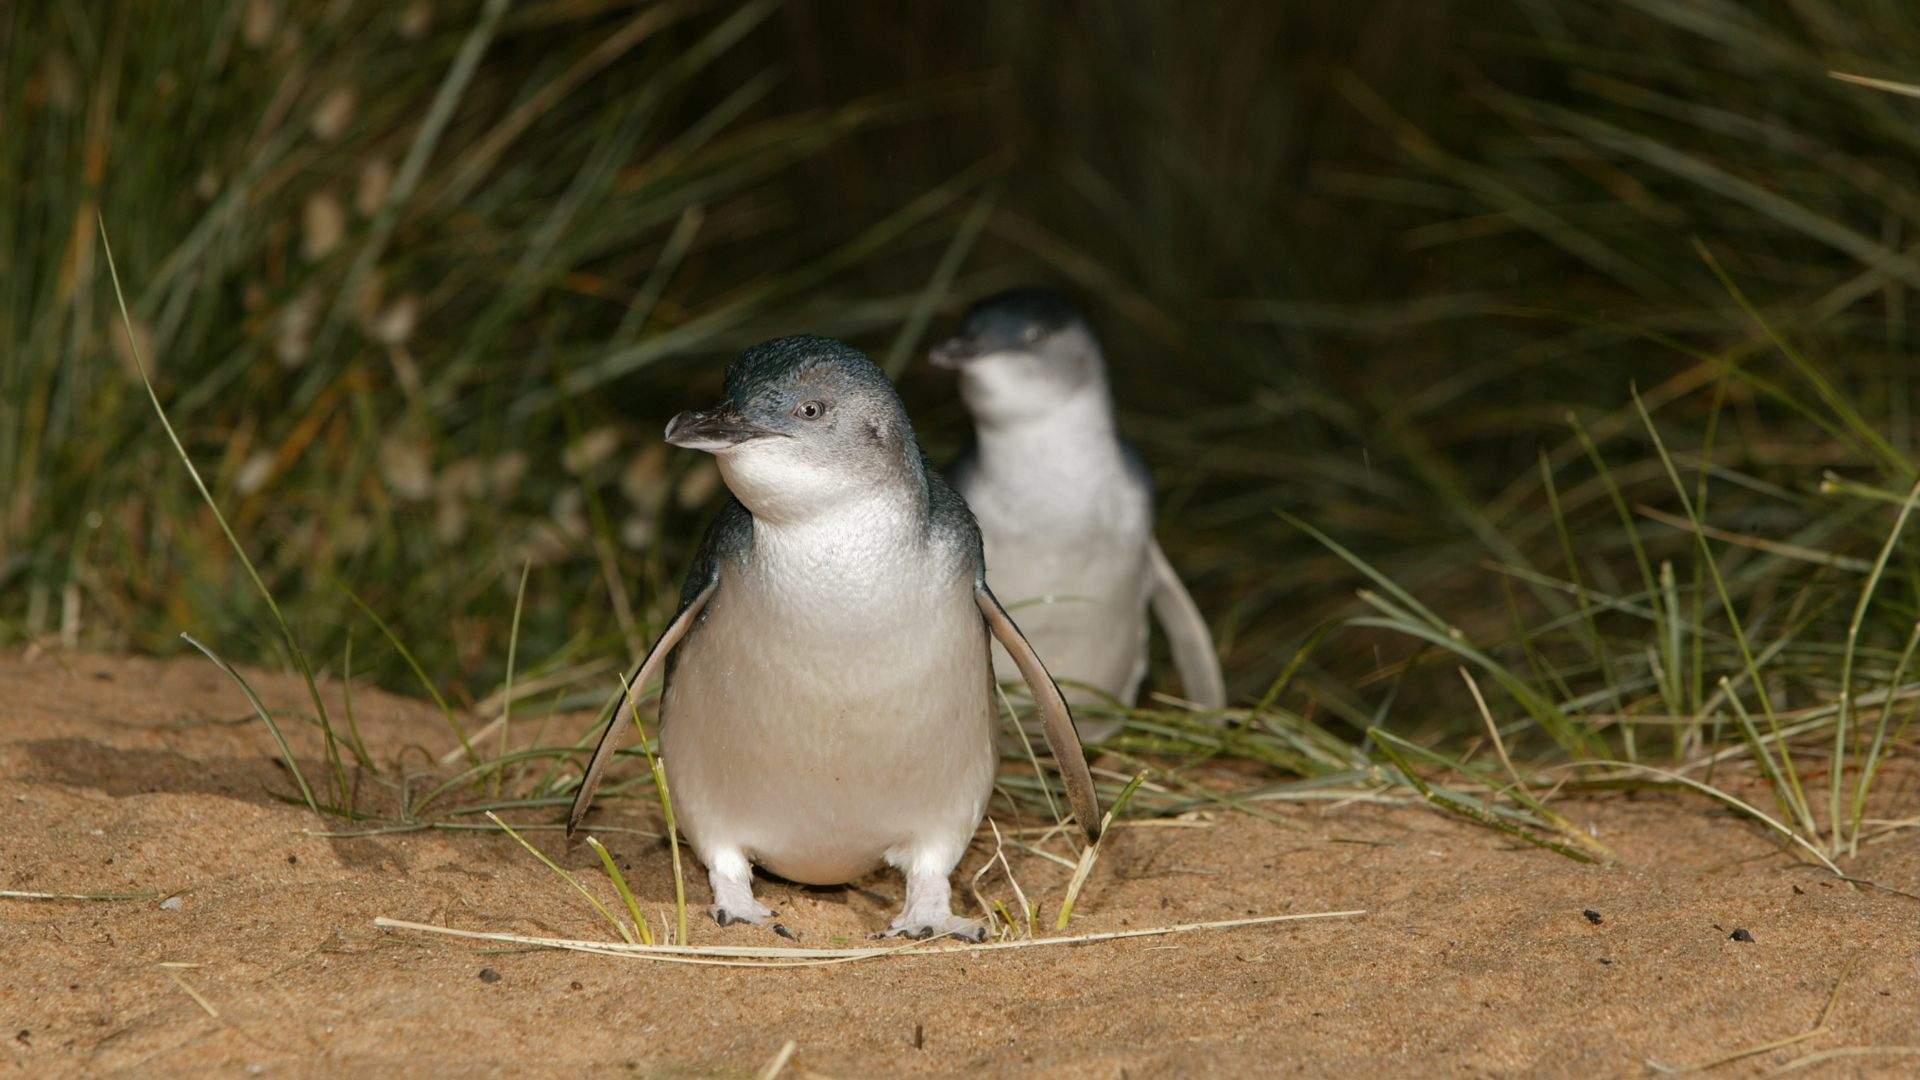 Phillip Island's Hugely Popular Penguin Parade Has Undergone a Multimillion-Dollar Makeover